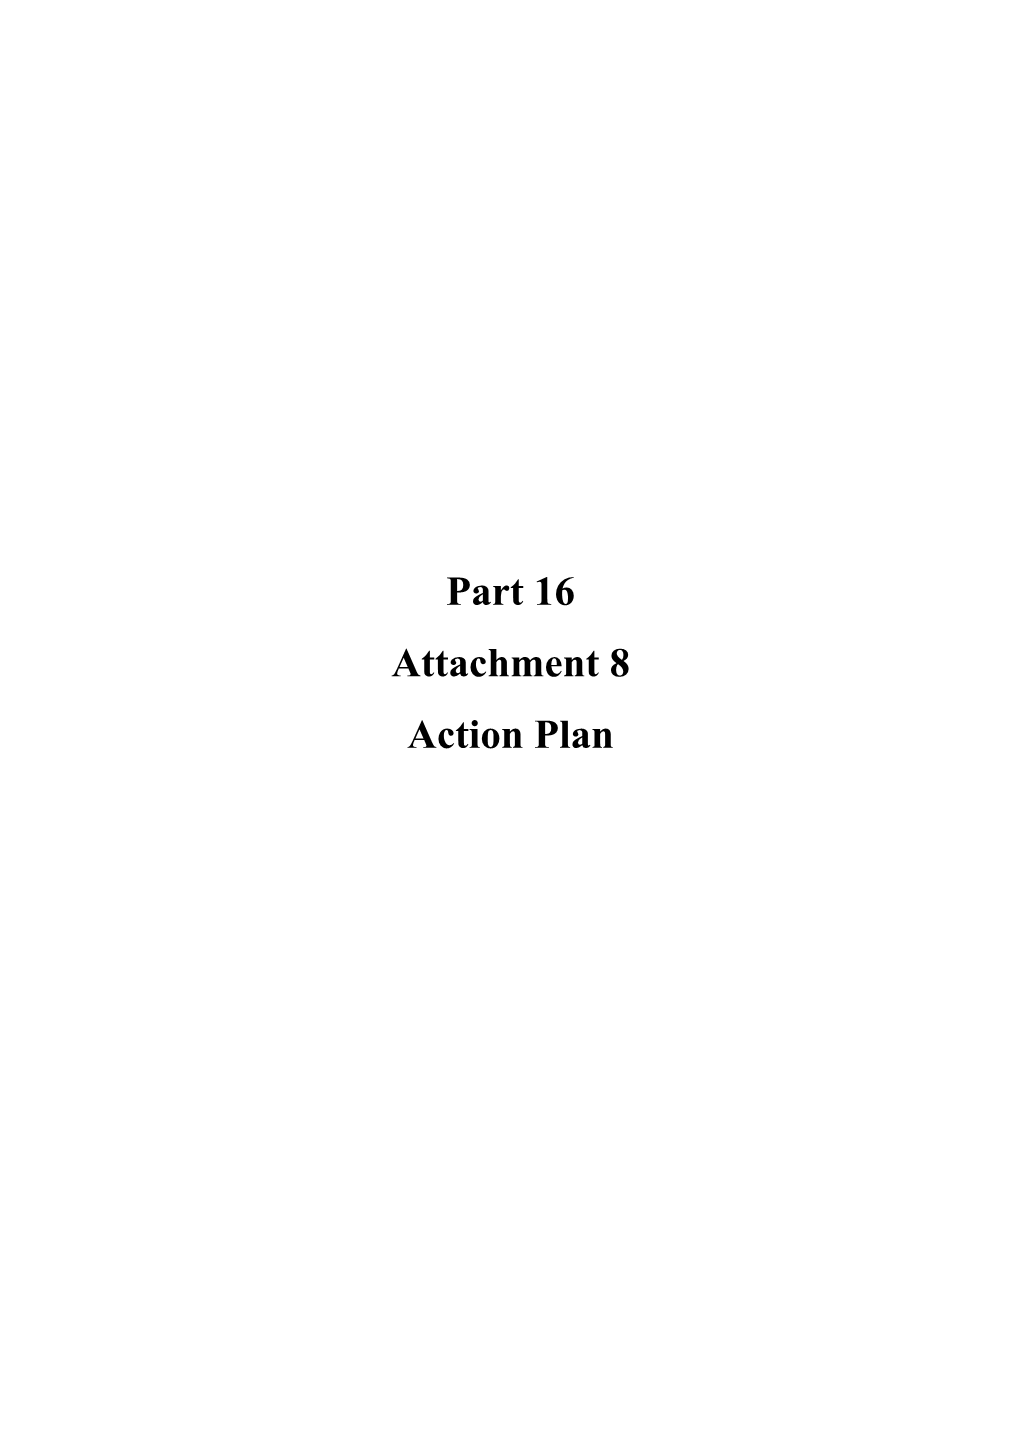 Part 16 Attachment 8 Action Plan